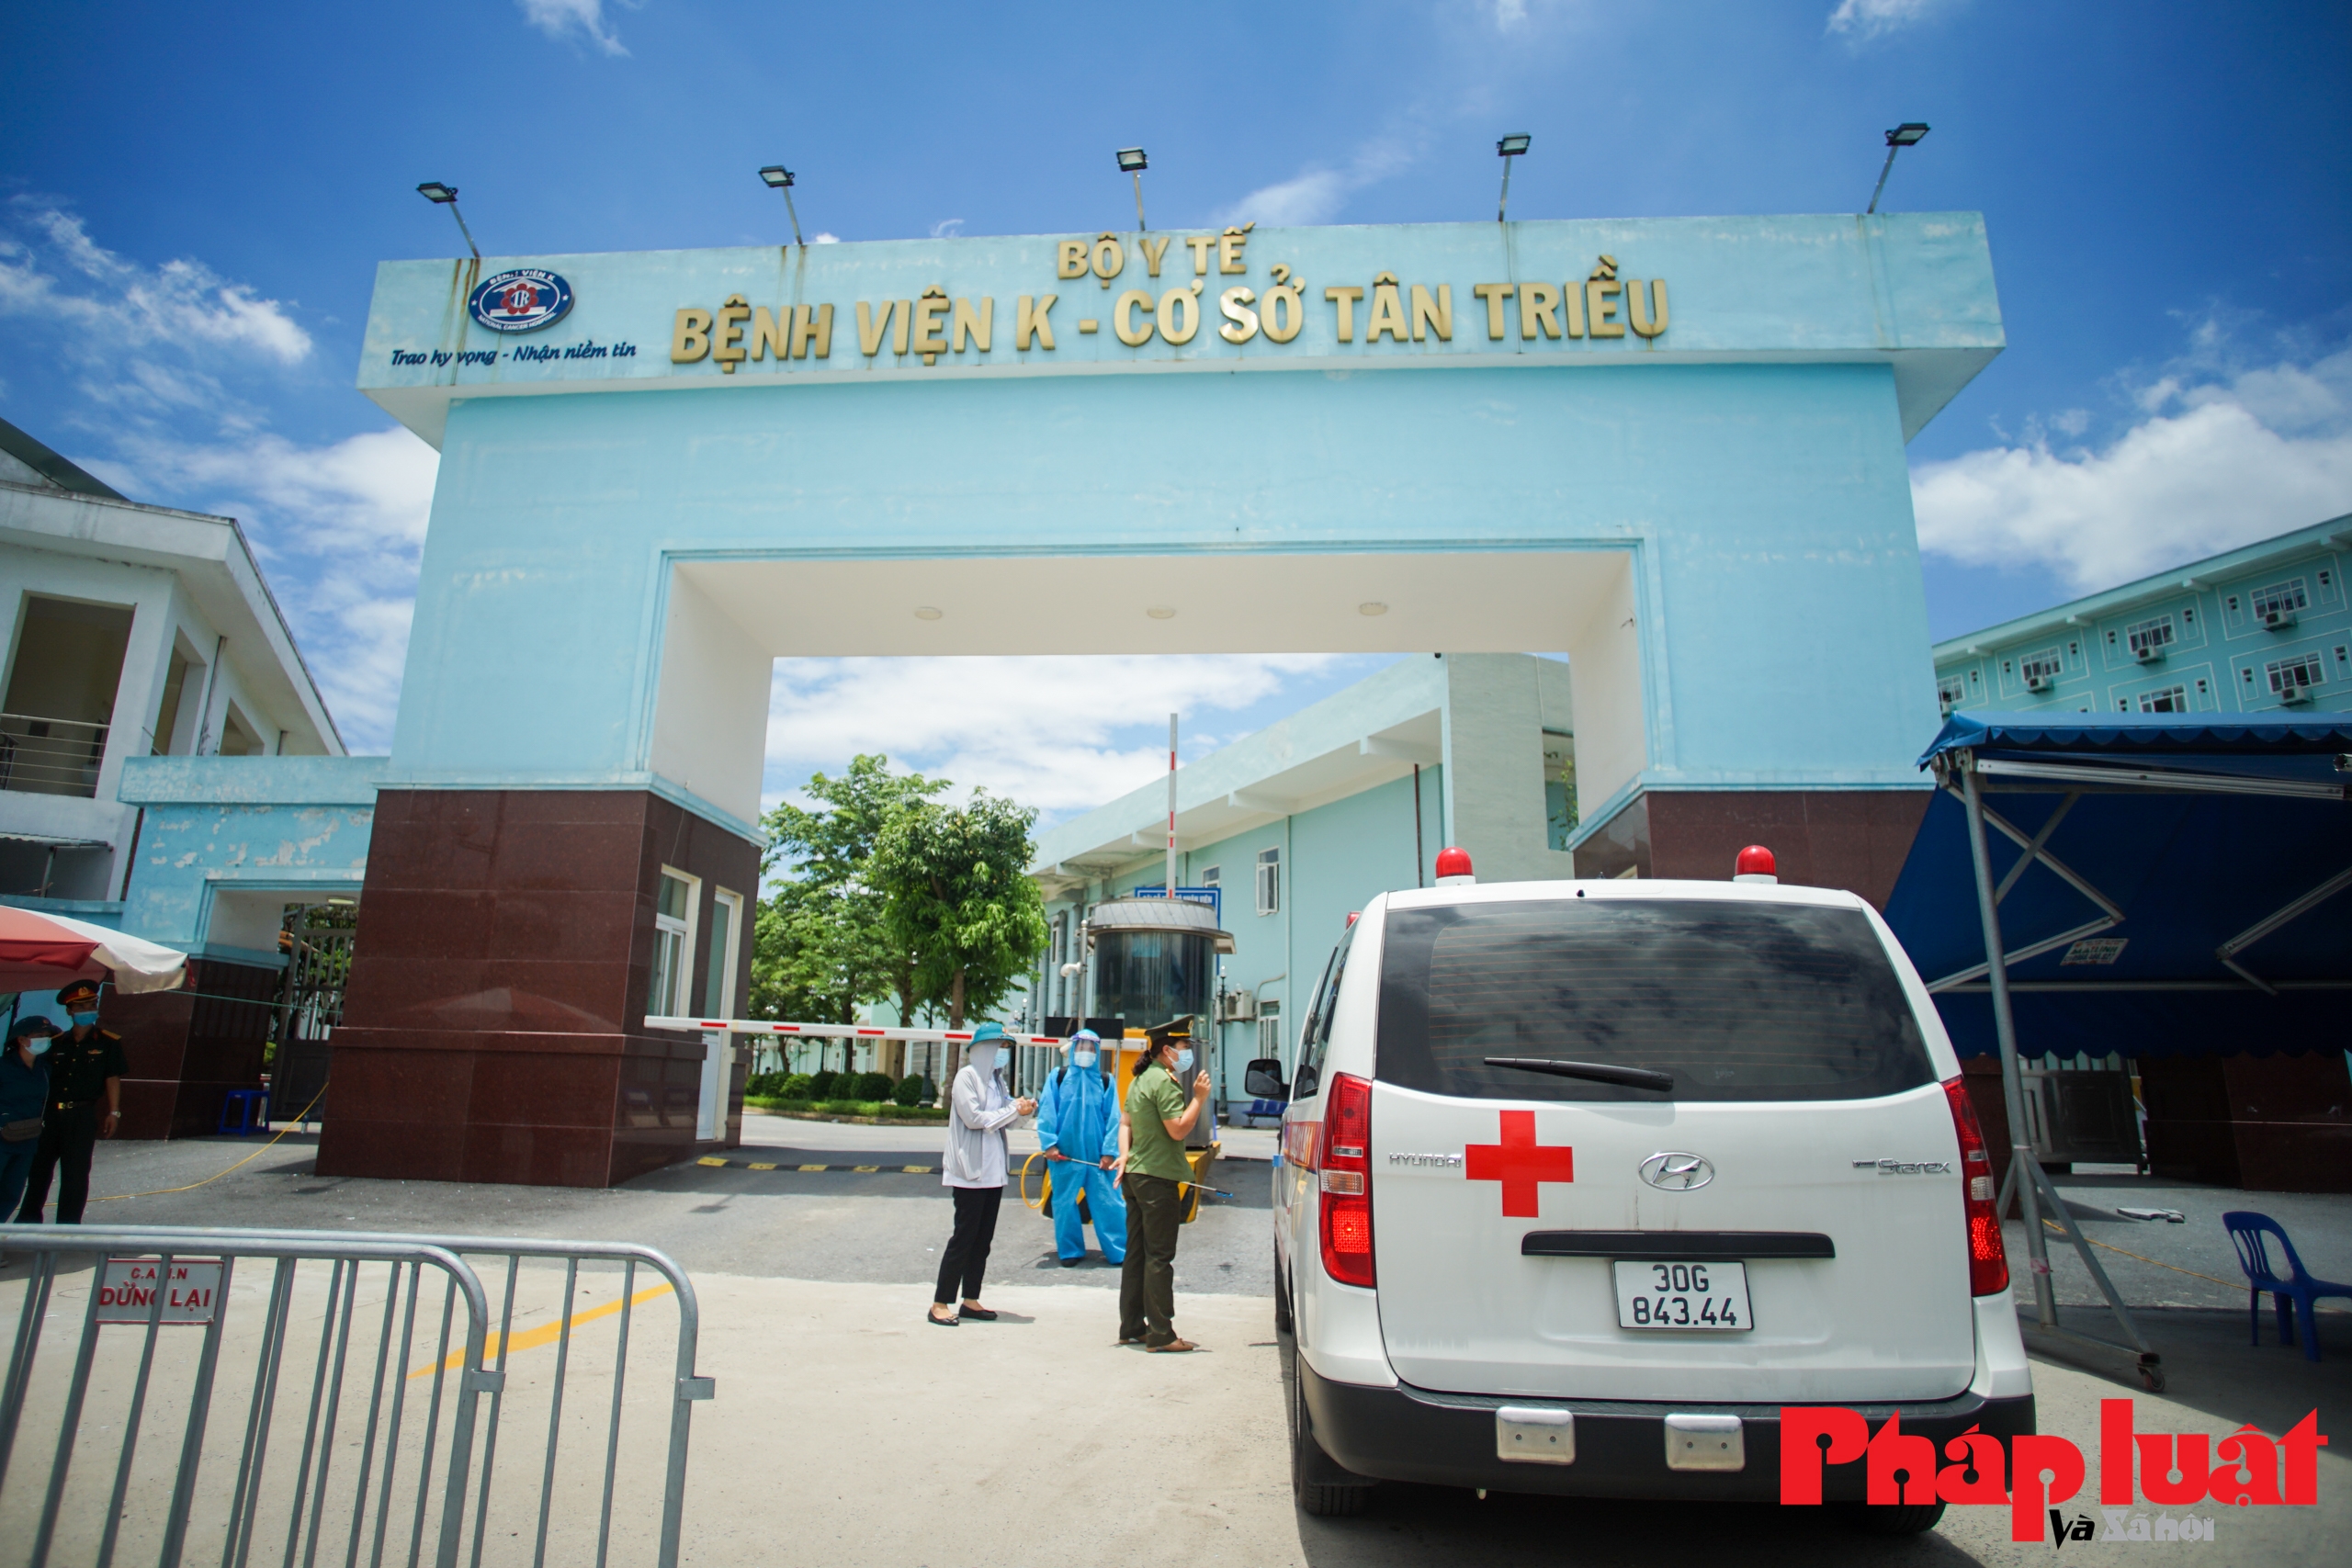 Chính thức gỡ rào phong toả bệnh viện K cơ sở Tân Triều